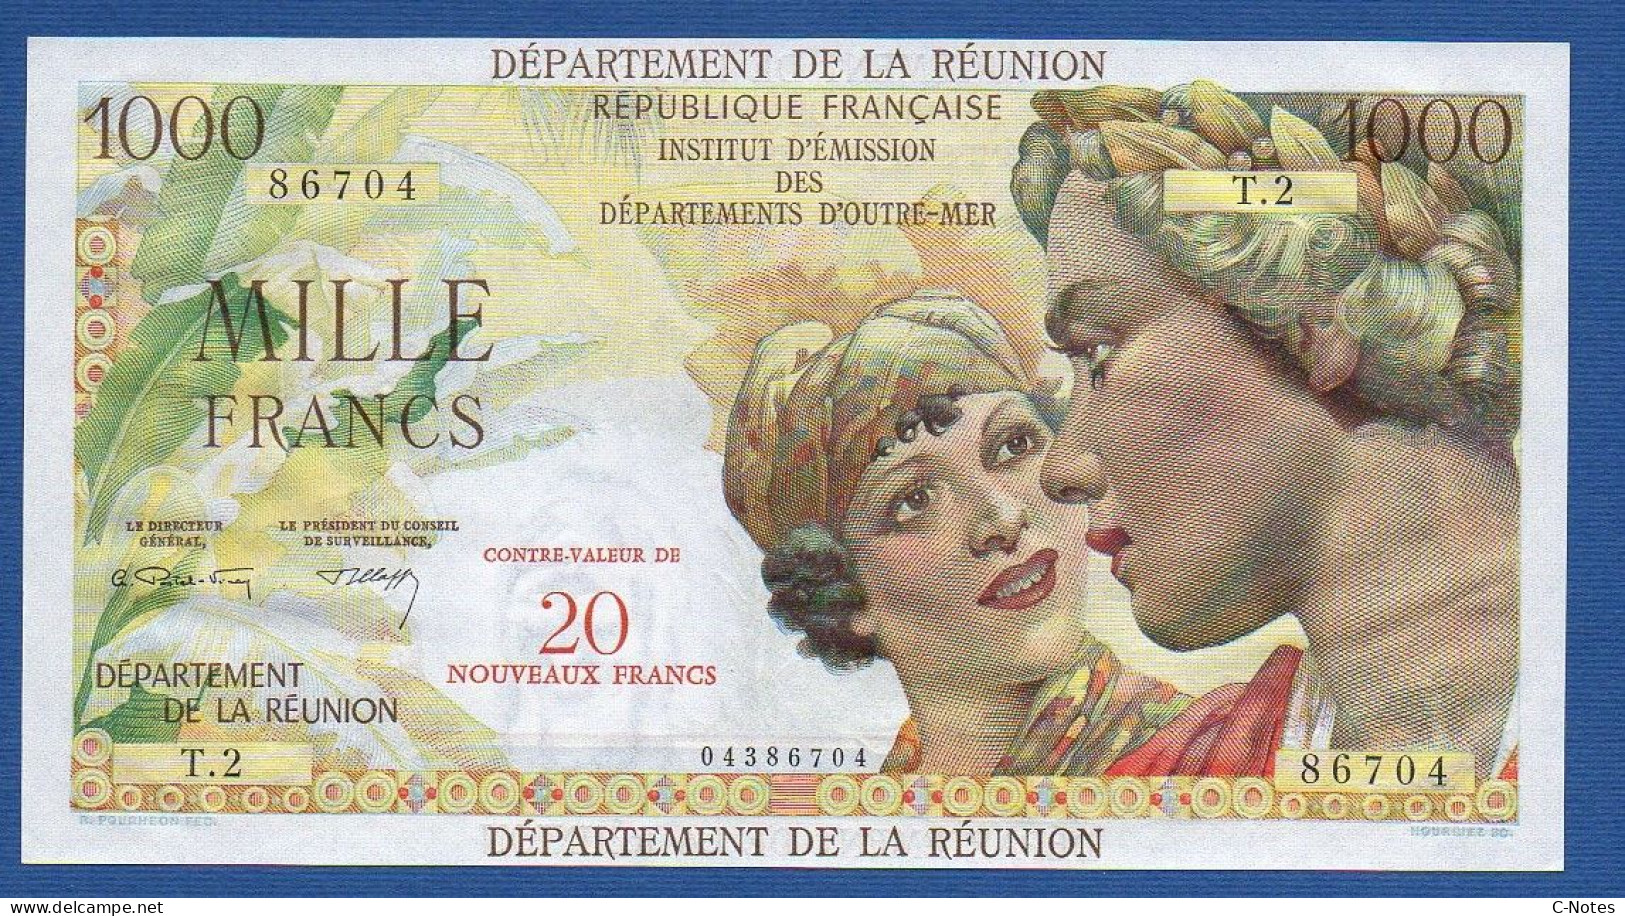 RÉUNION - P.55b – 20 Nouveaux Francs ND (1971) UNC, S/n T.2 86704 - Reunión